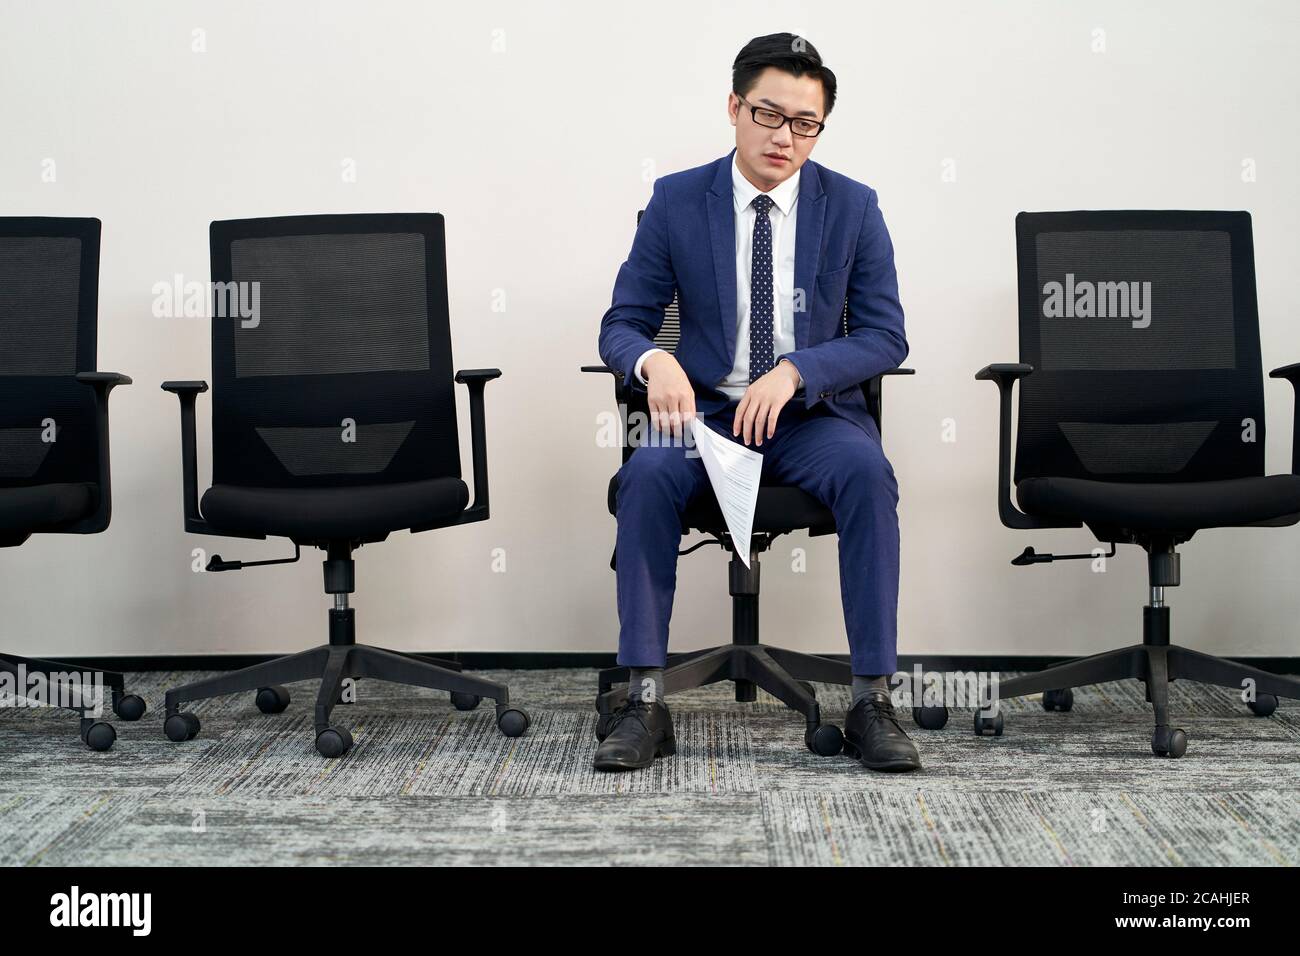 le jeune homme asiatique, candidat à un emploi assis à la présidence, semble frustré et défait Banque D'Images